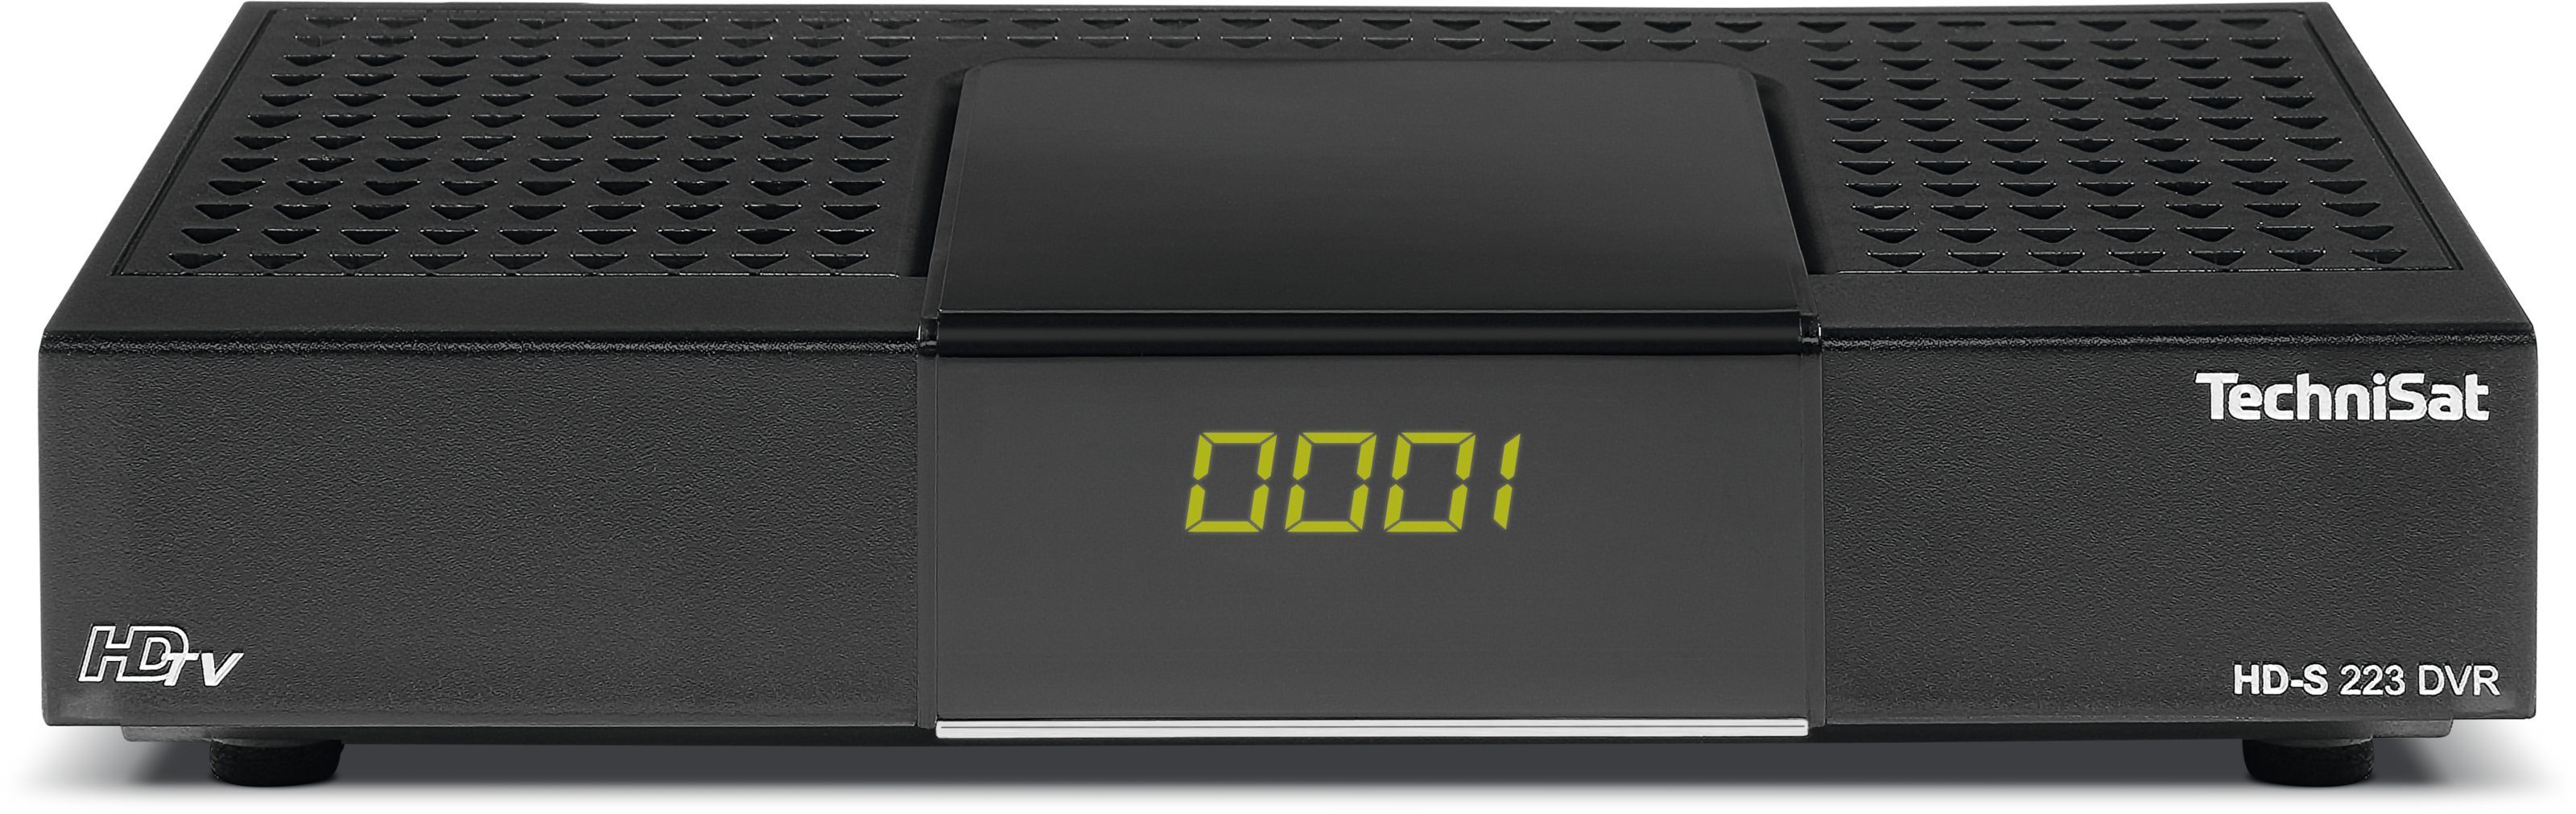 TechniSat HD-S 223 DVR SAT-Receiver (Kompaktes, kleines Gehäuse